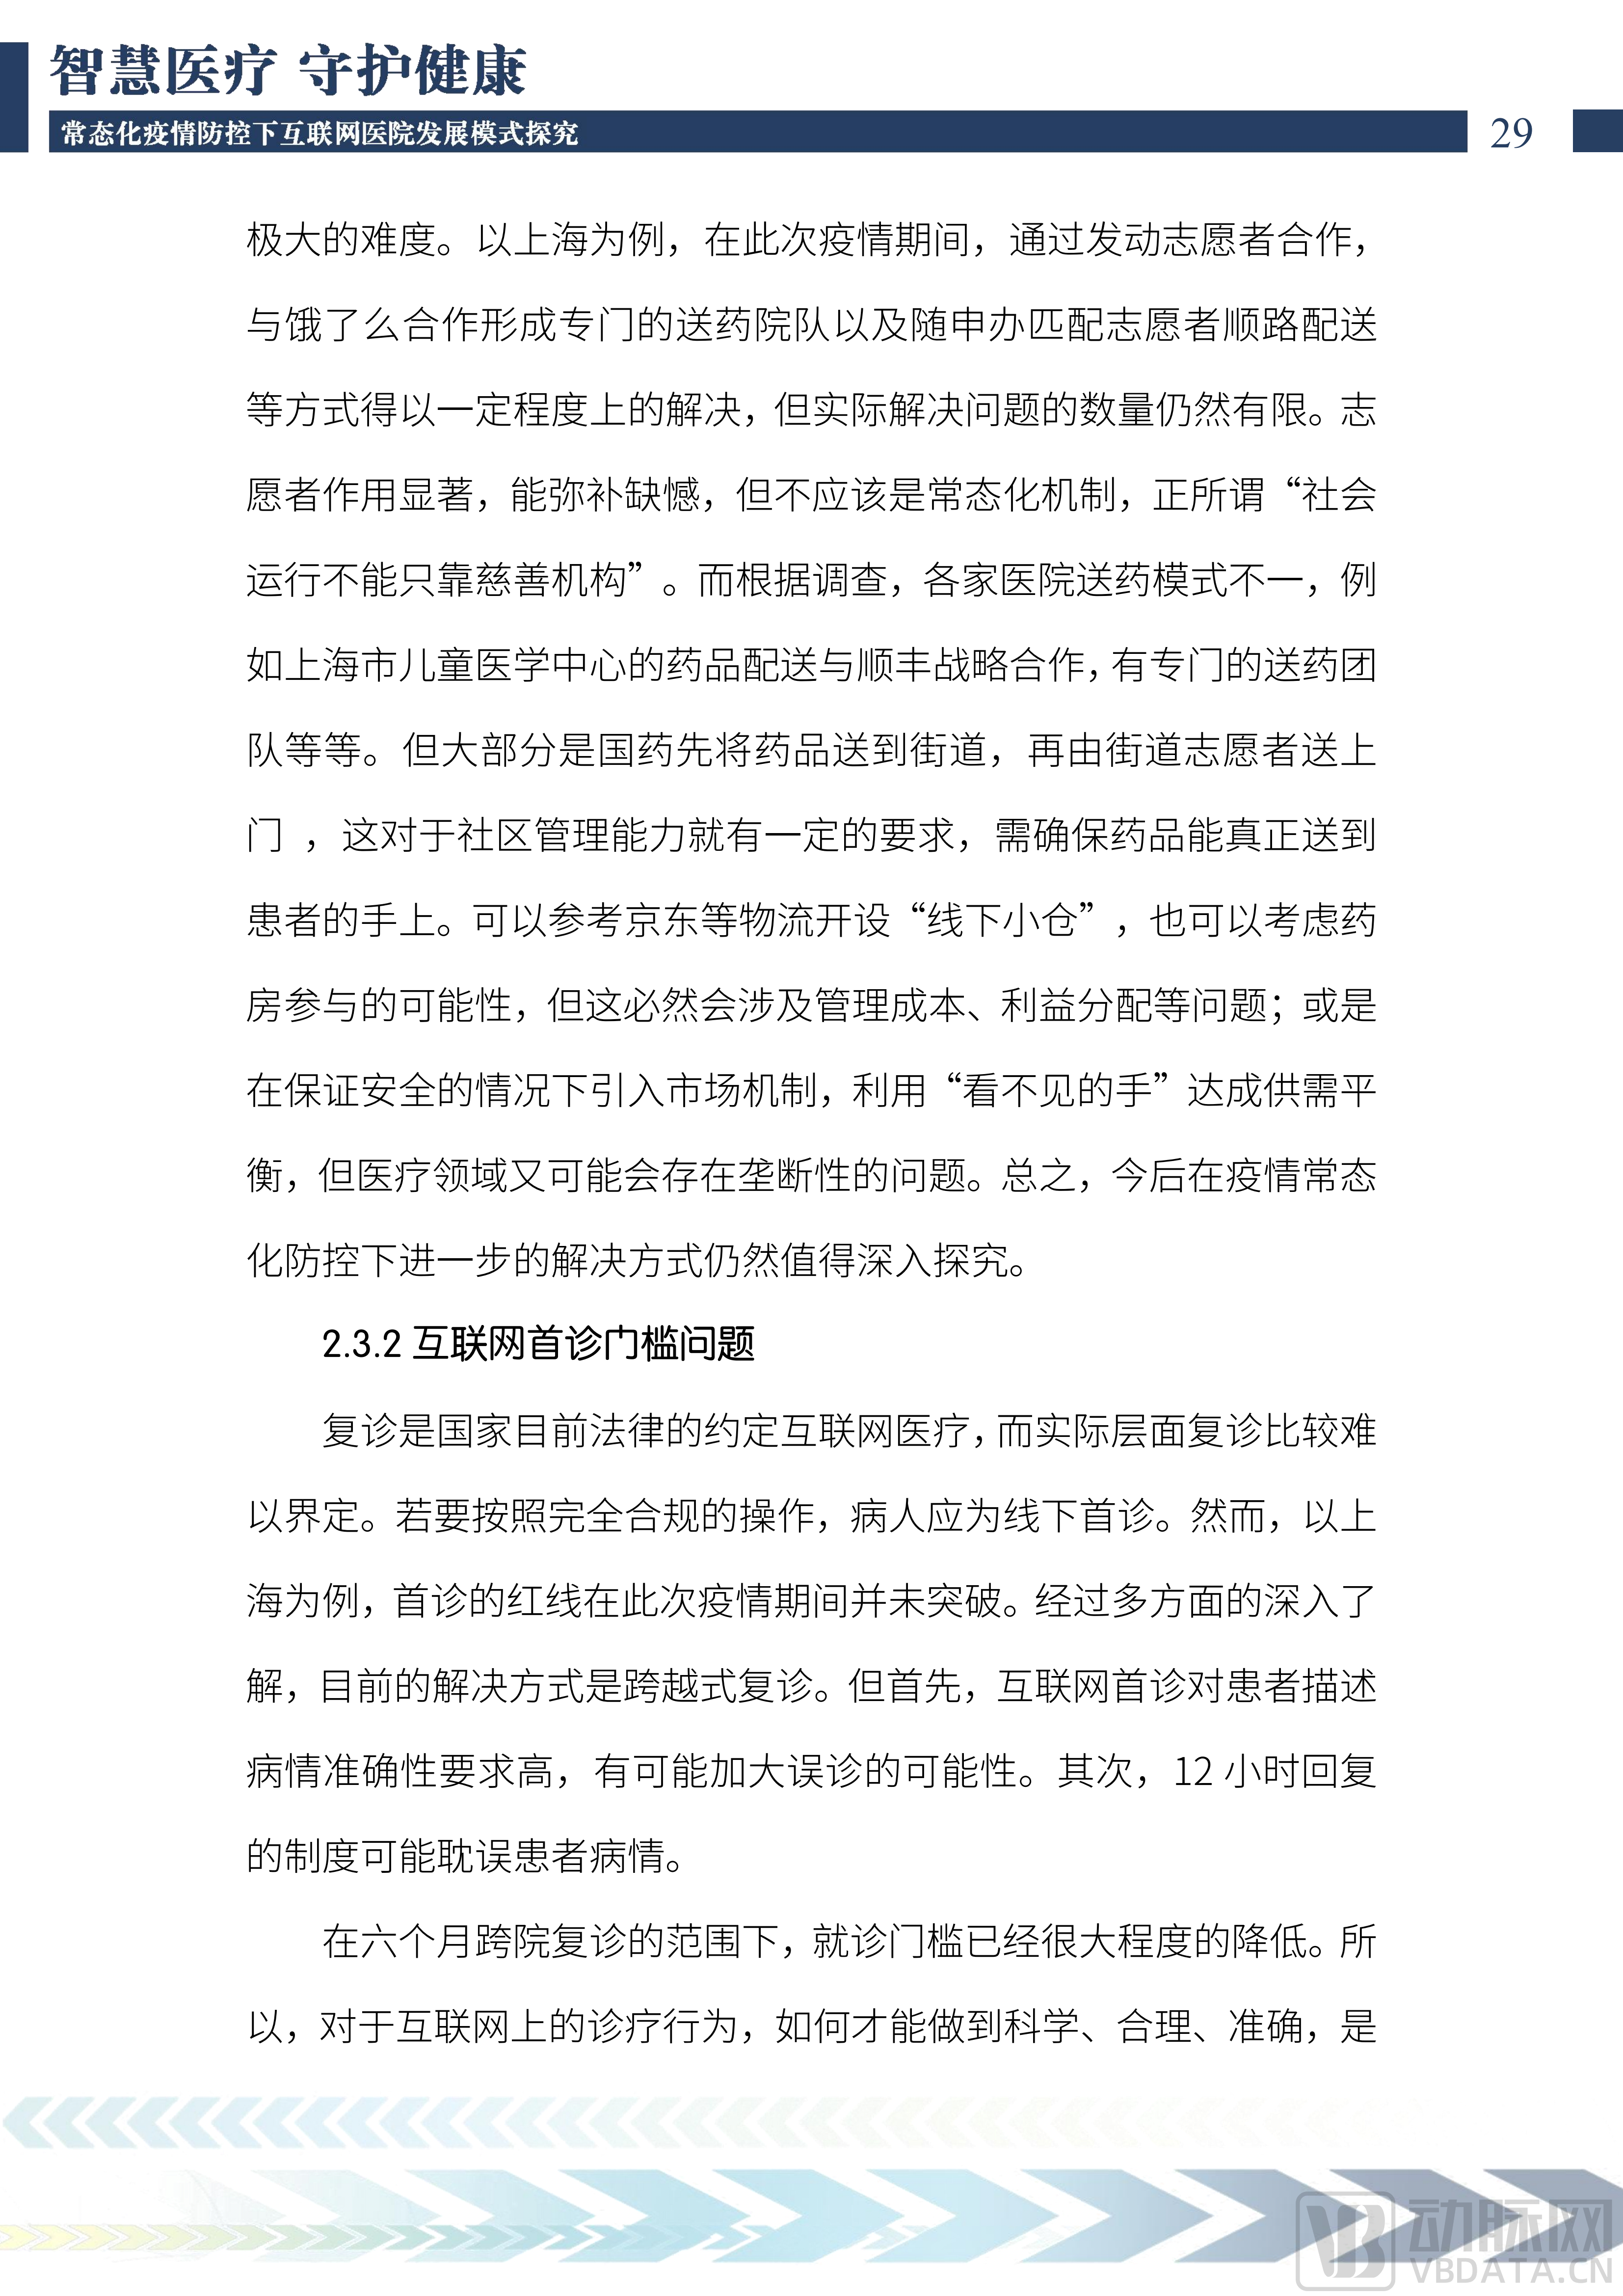 2022中国互联网医院发展调研报告(1)_30.png